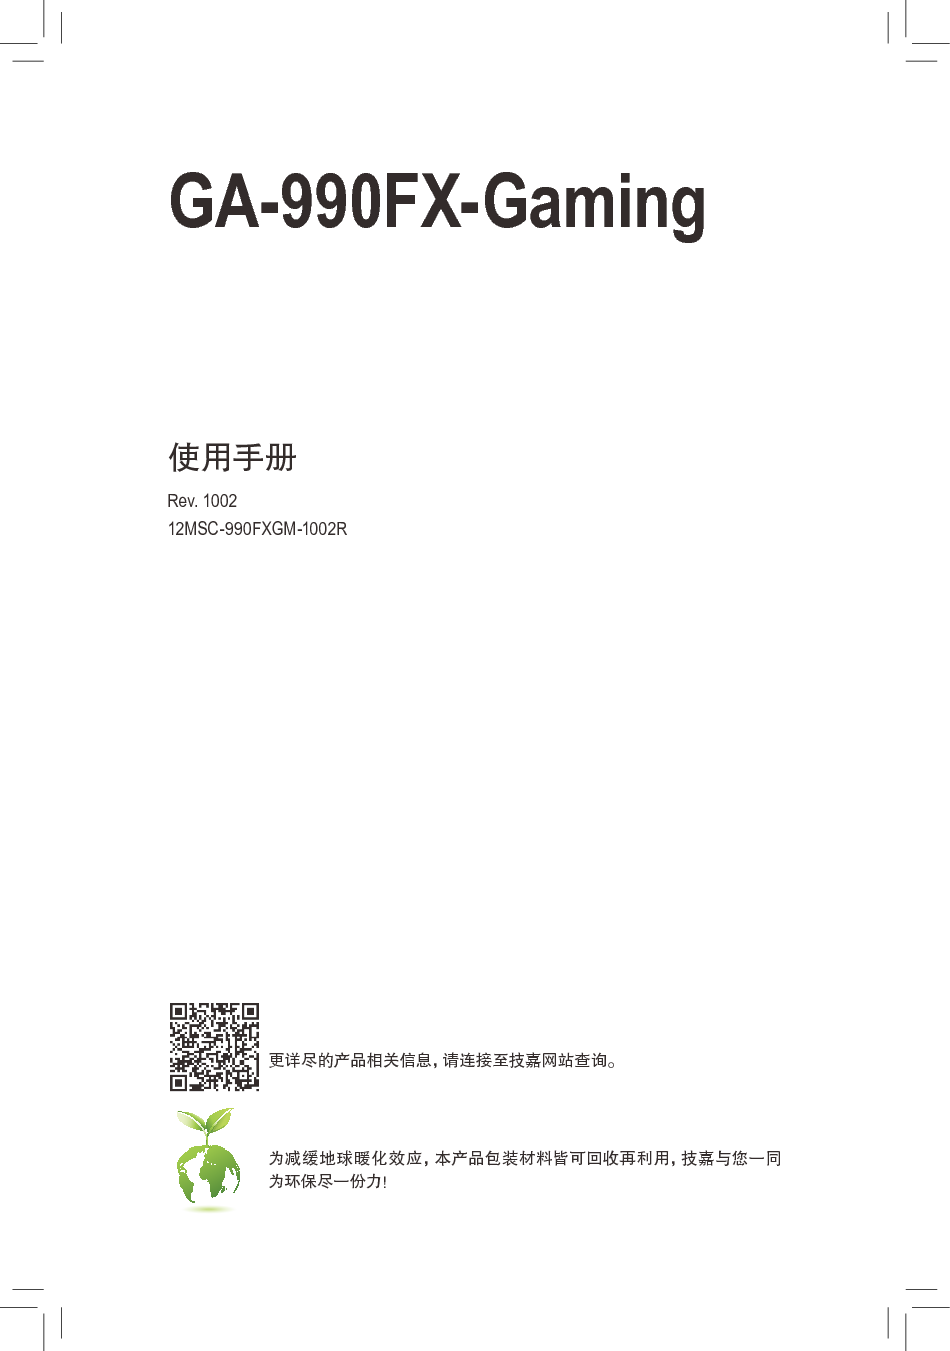 技嘉 Gigabyte GA-990FX-Gaming 1002版 使用手册 封面